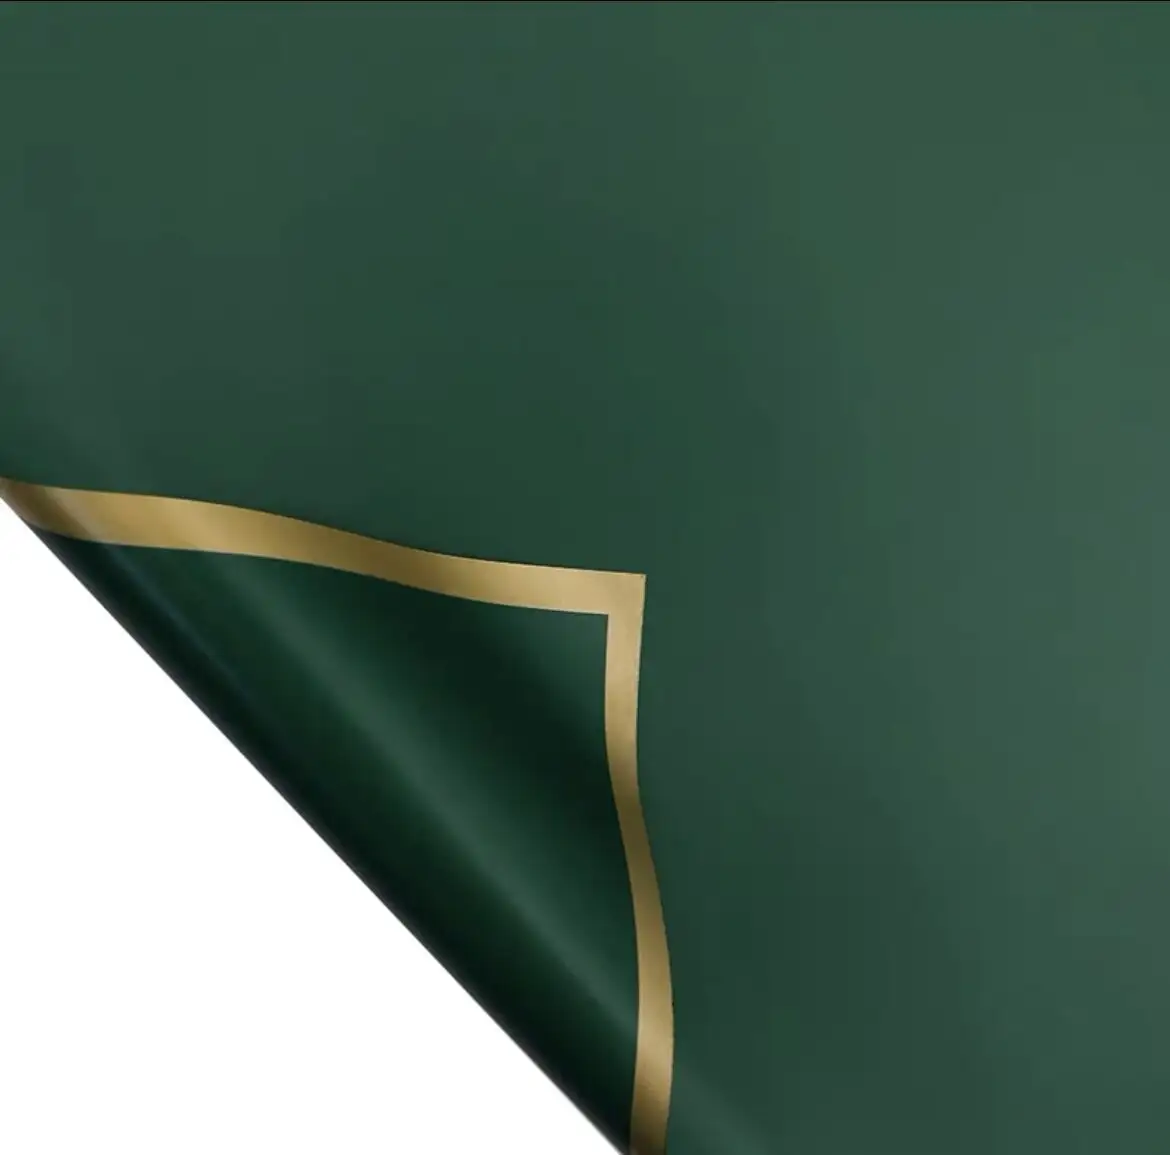 लक्जरी बनावट वाला कस्टम प्रिंटिंग रैपिंग उपहार टिशू पेपर हरा रंग मोटा उच्च गुणवत्ता वाला रैपिंग पैकेजिंग पेपर